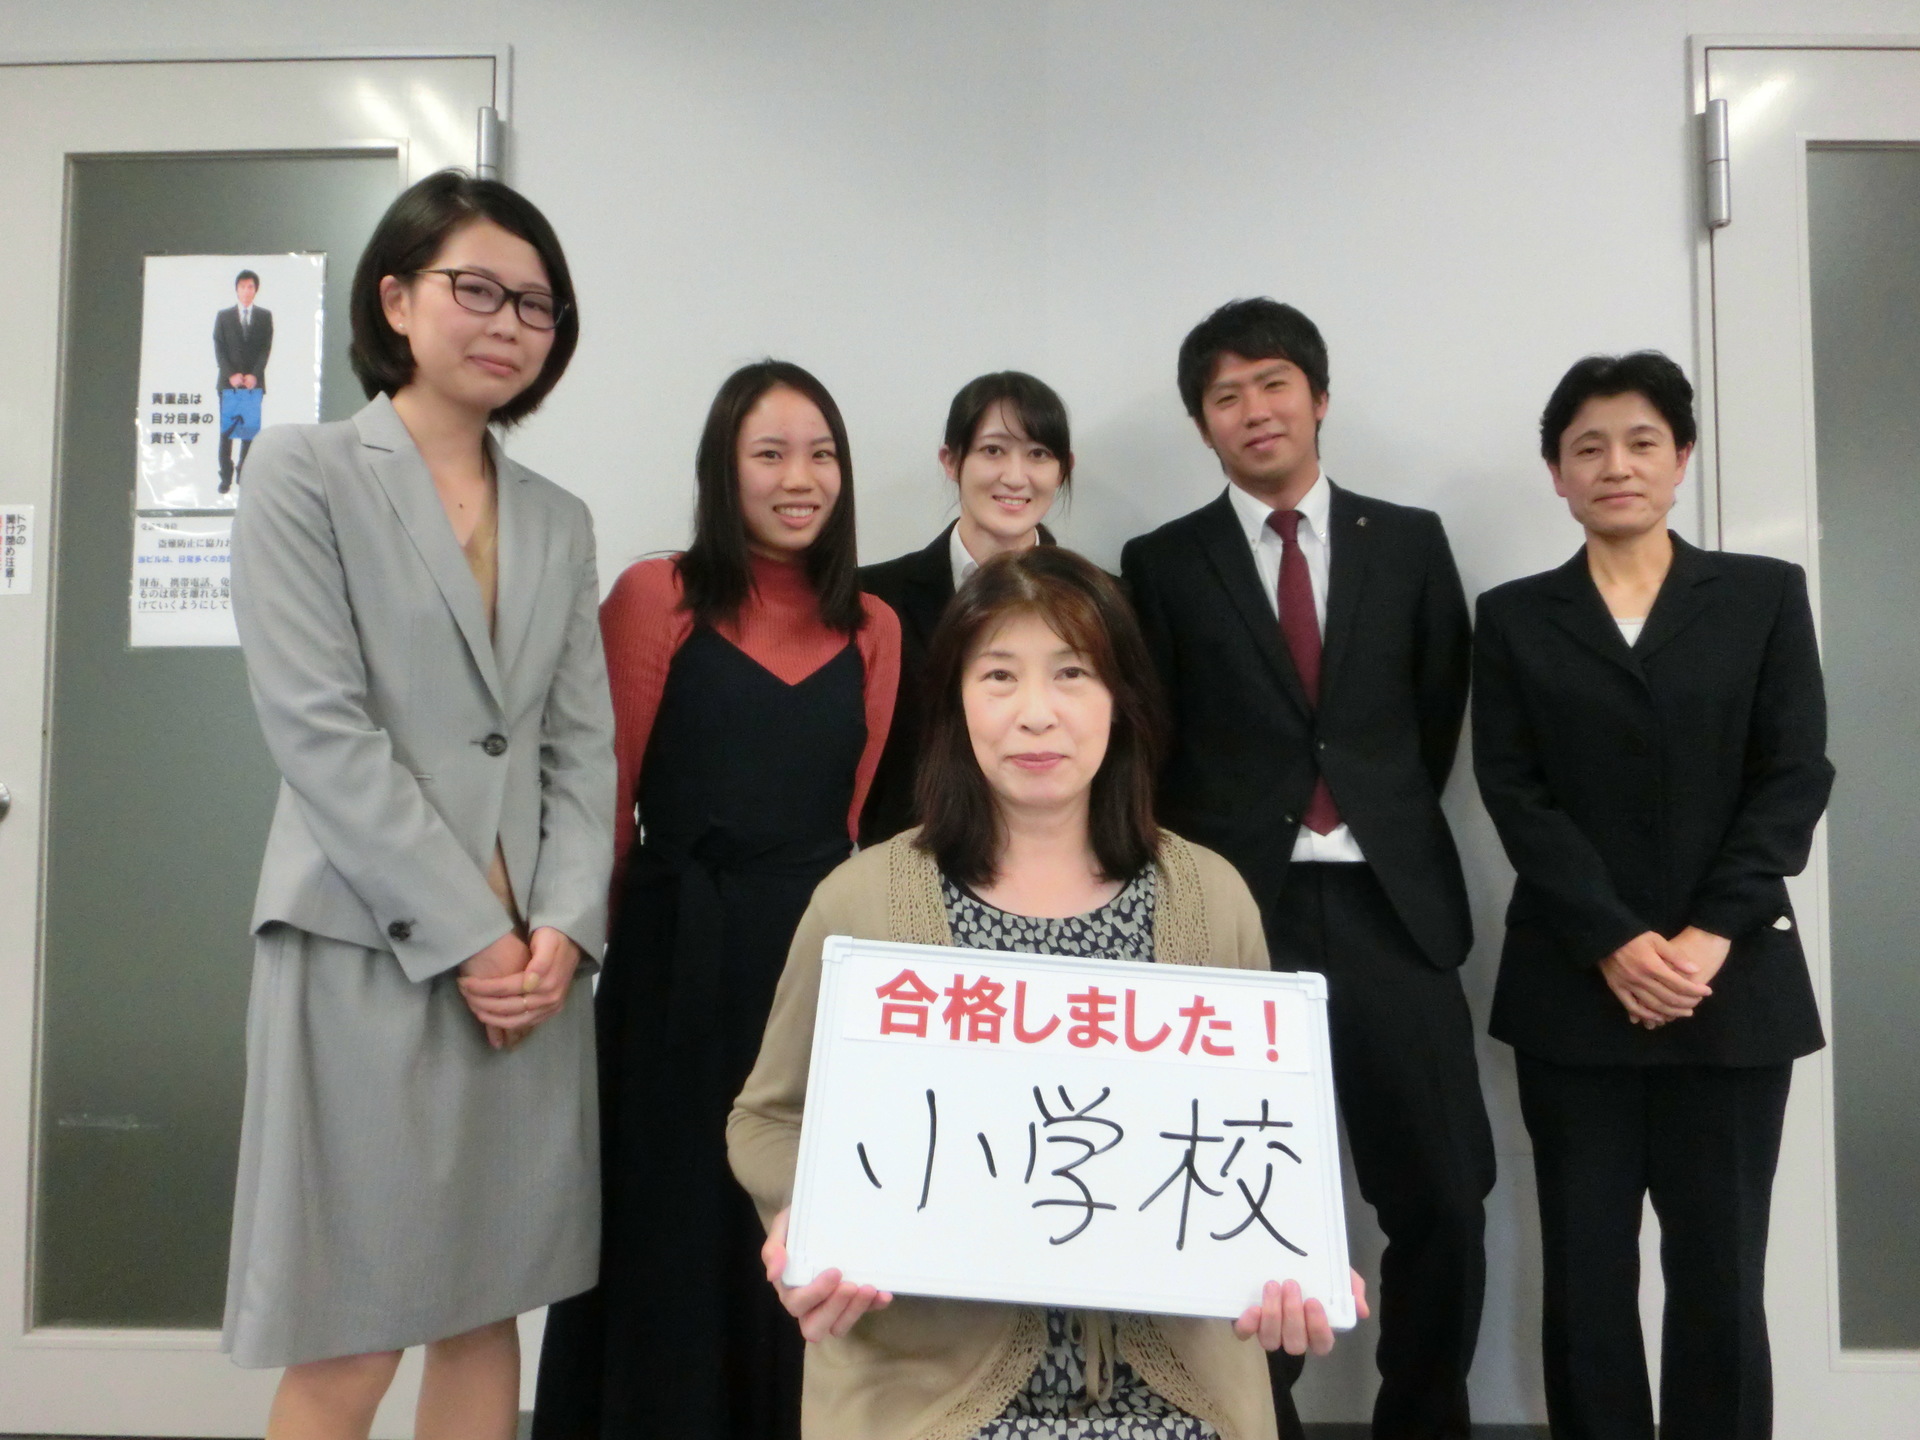 教員合格者が報告に来てくれました 東京アカデミー熊本校 教員採用試験 看護師国家試験 公務員試験 のブログ